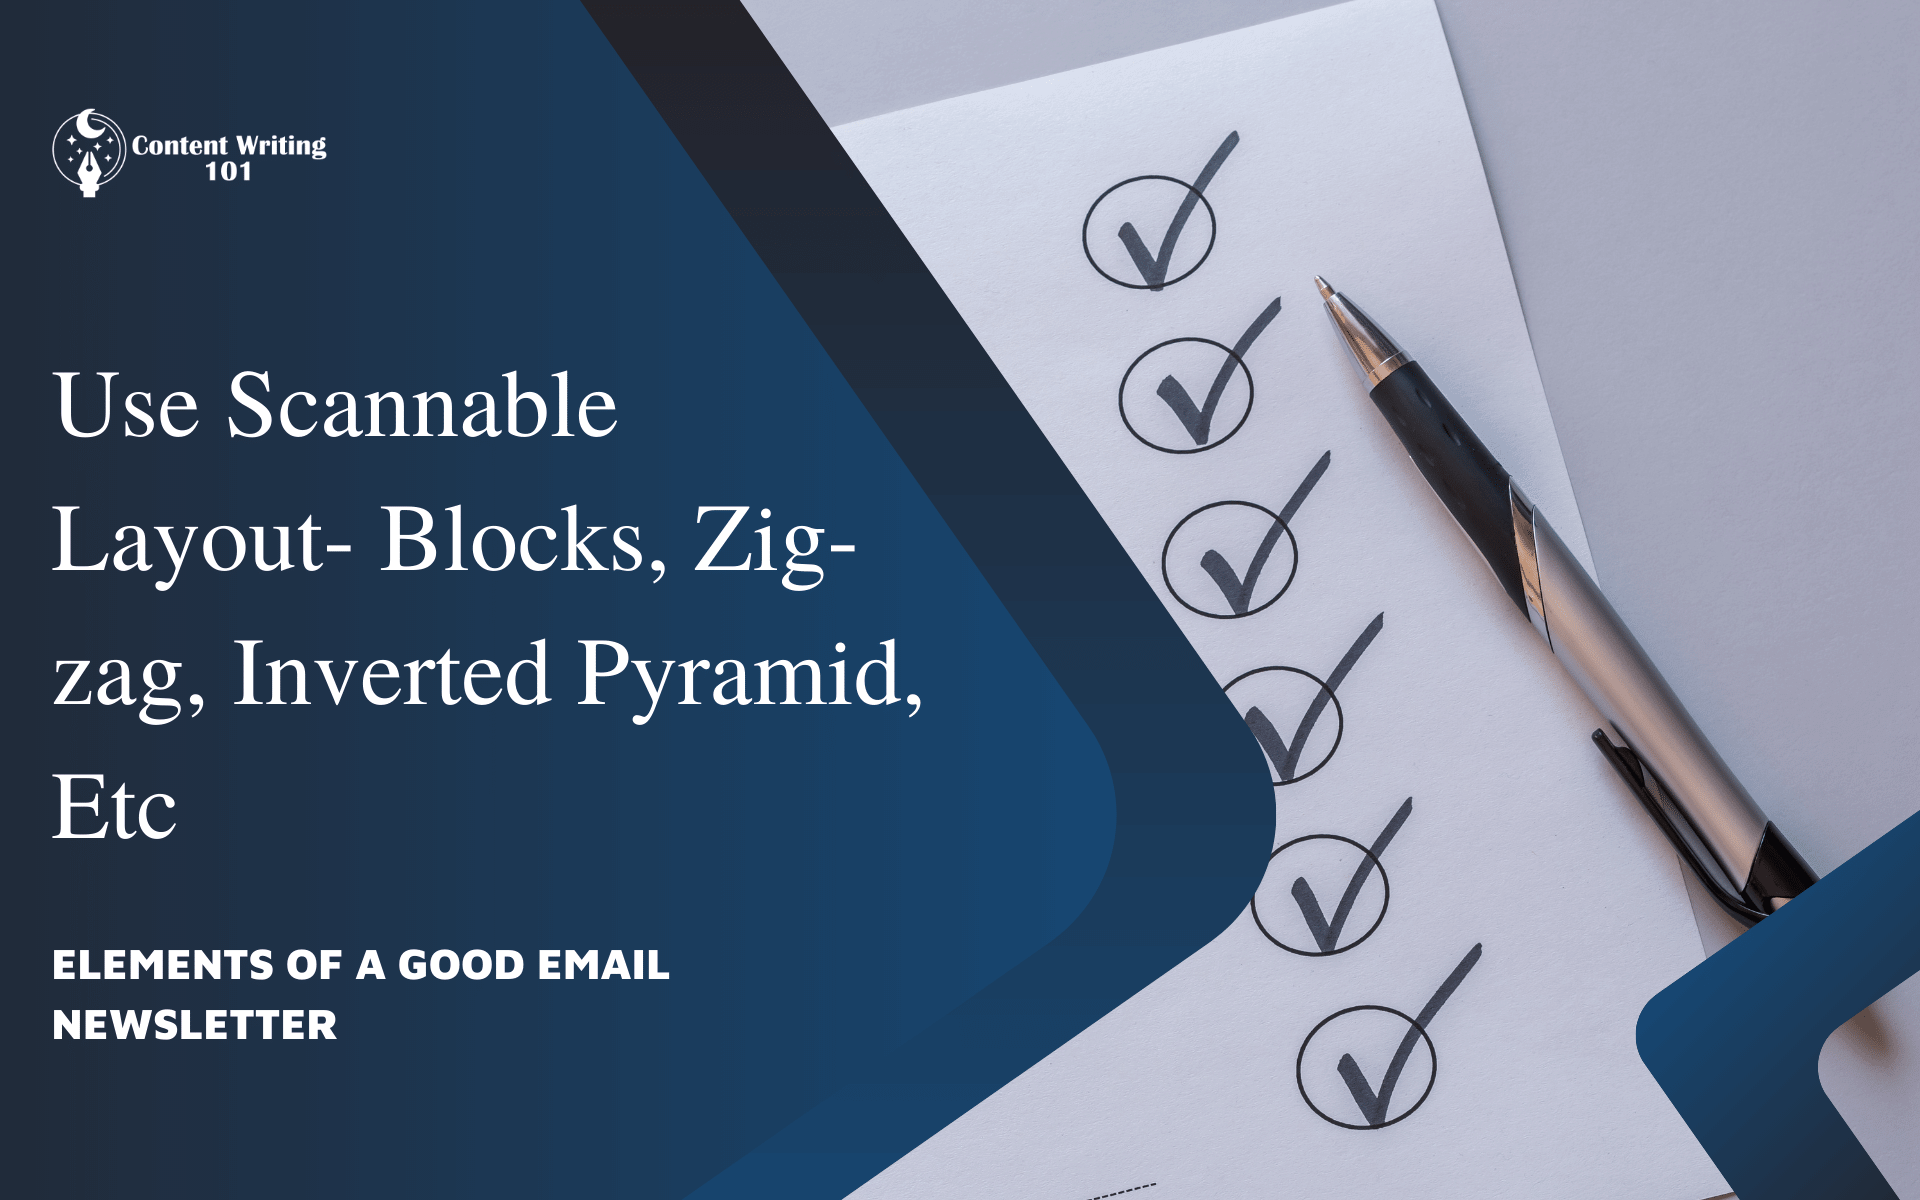 5. Use Scannable Layout- Blocks, Zig-zag, Inverted Pyramid, Etc